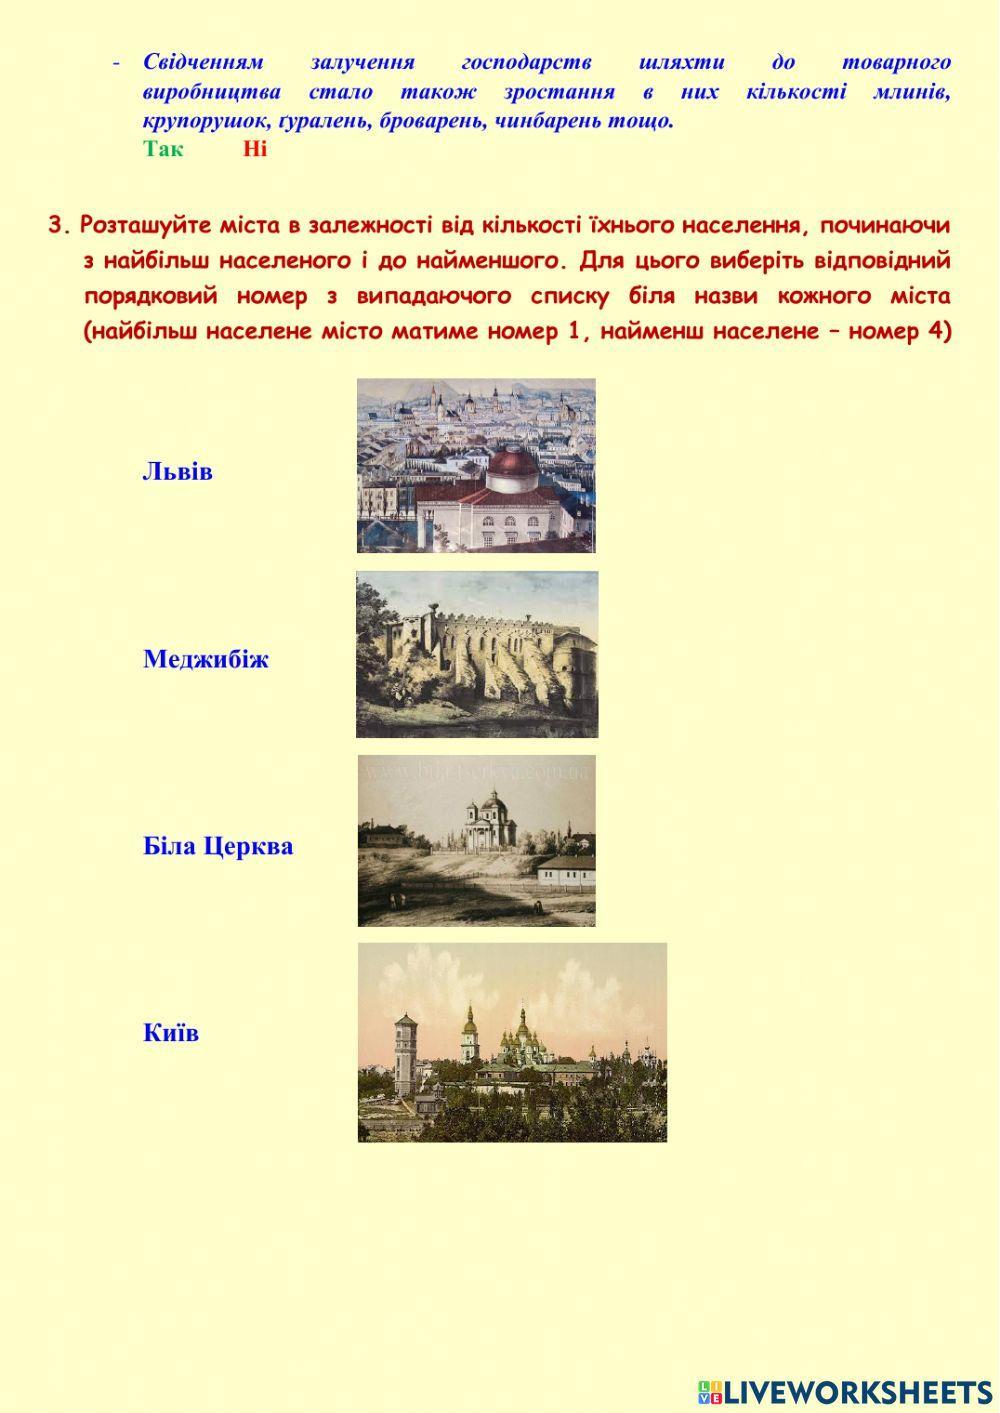 Соціально-економічний розвиток українських земель у першій половині XVII століття